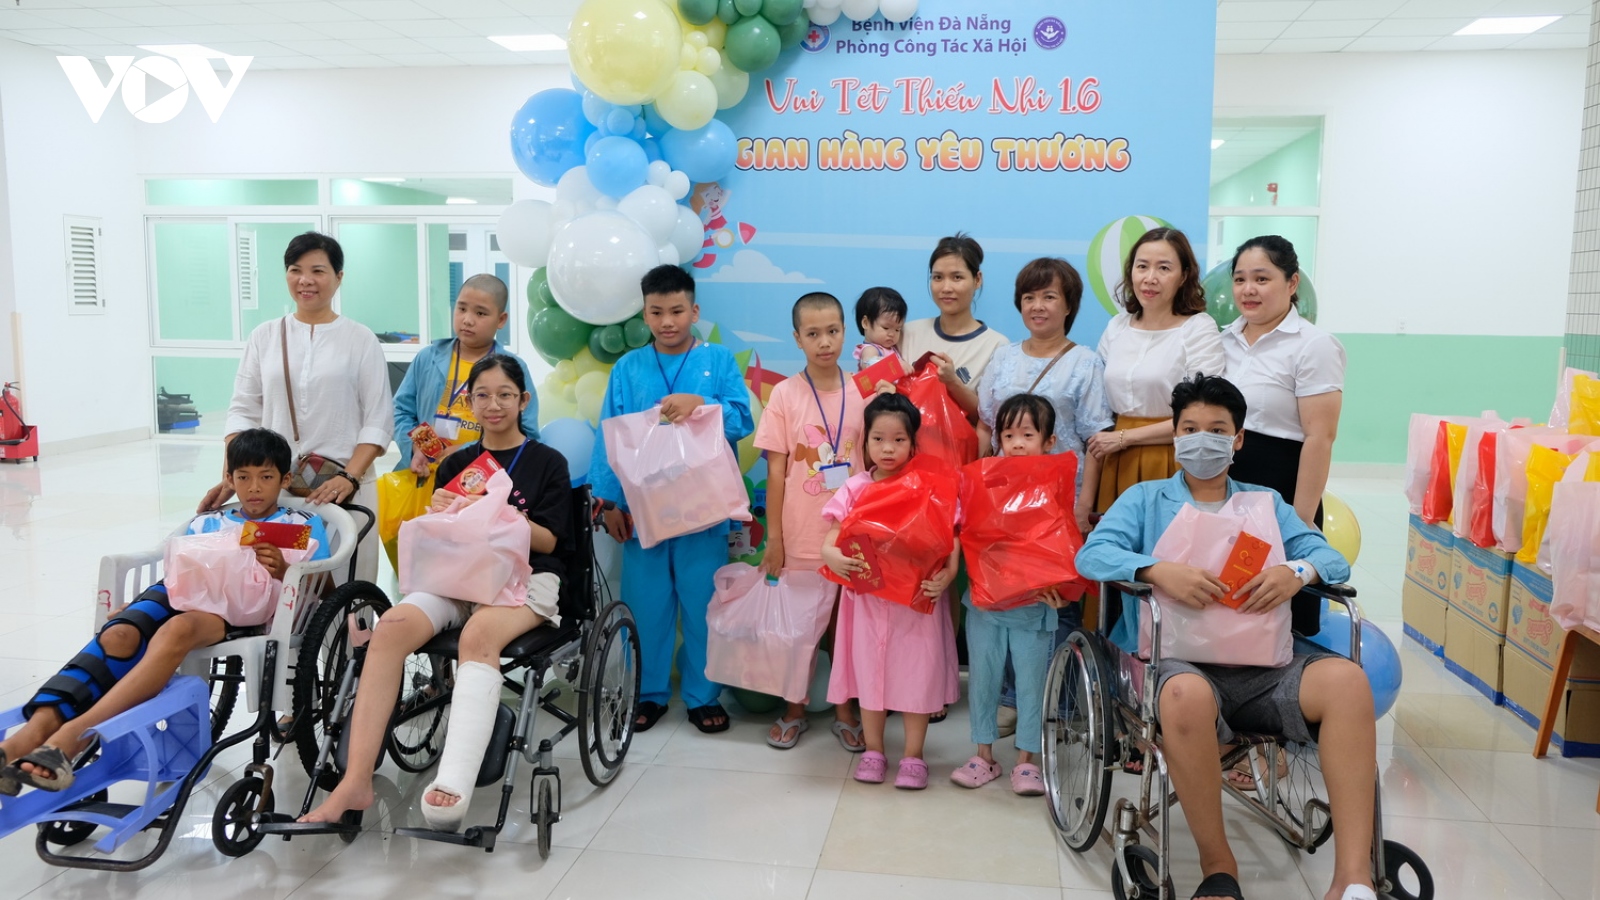 Đem niềm vui cho trẻ em đang điều trị tại Bệnh viện Đà Nẵng